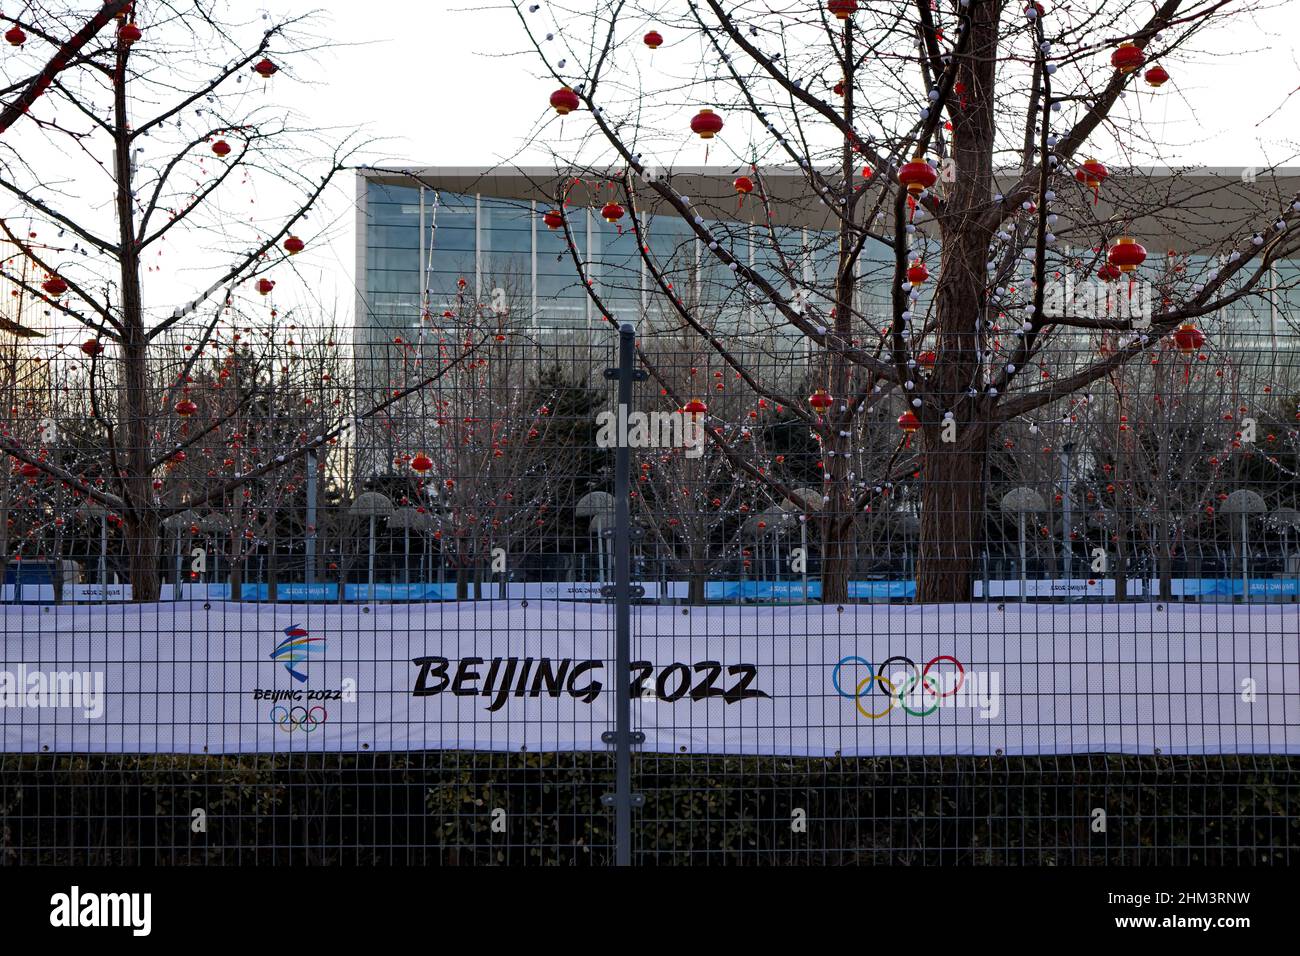 La signalisation avec emblème et slogan des Jeux olympiques d'hiver de Beijing 2022 au parc olympique de Beijing en Chine le 21 février 2022 Banque D'Images